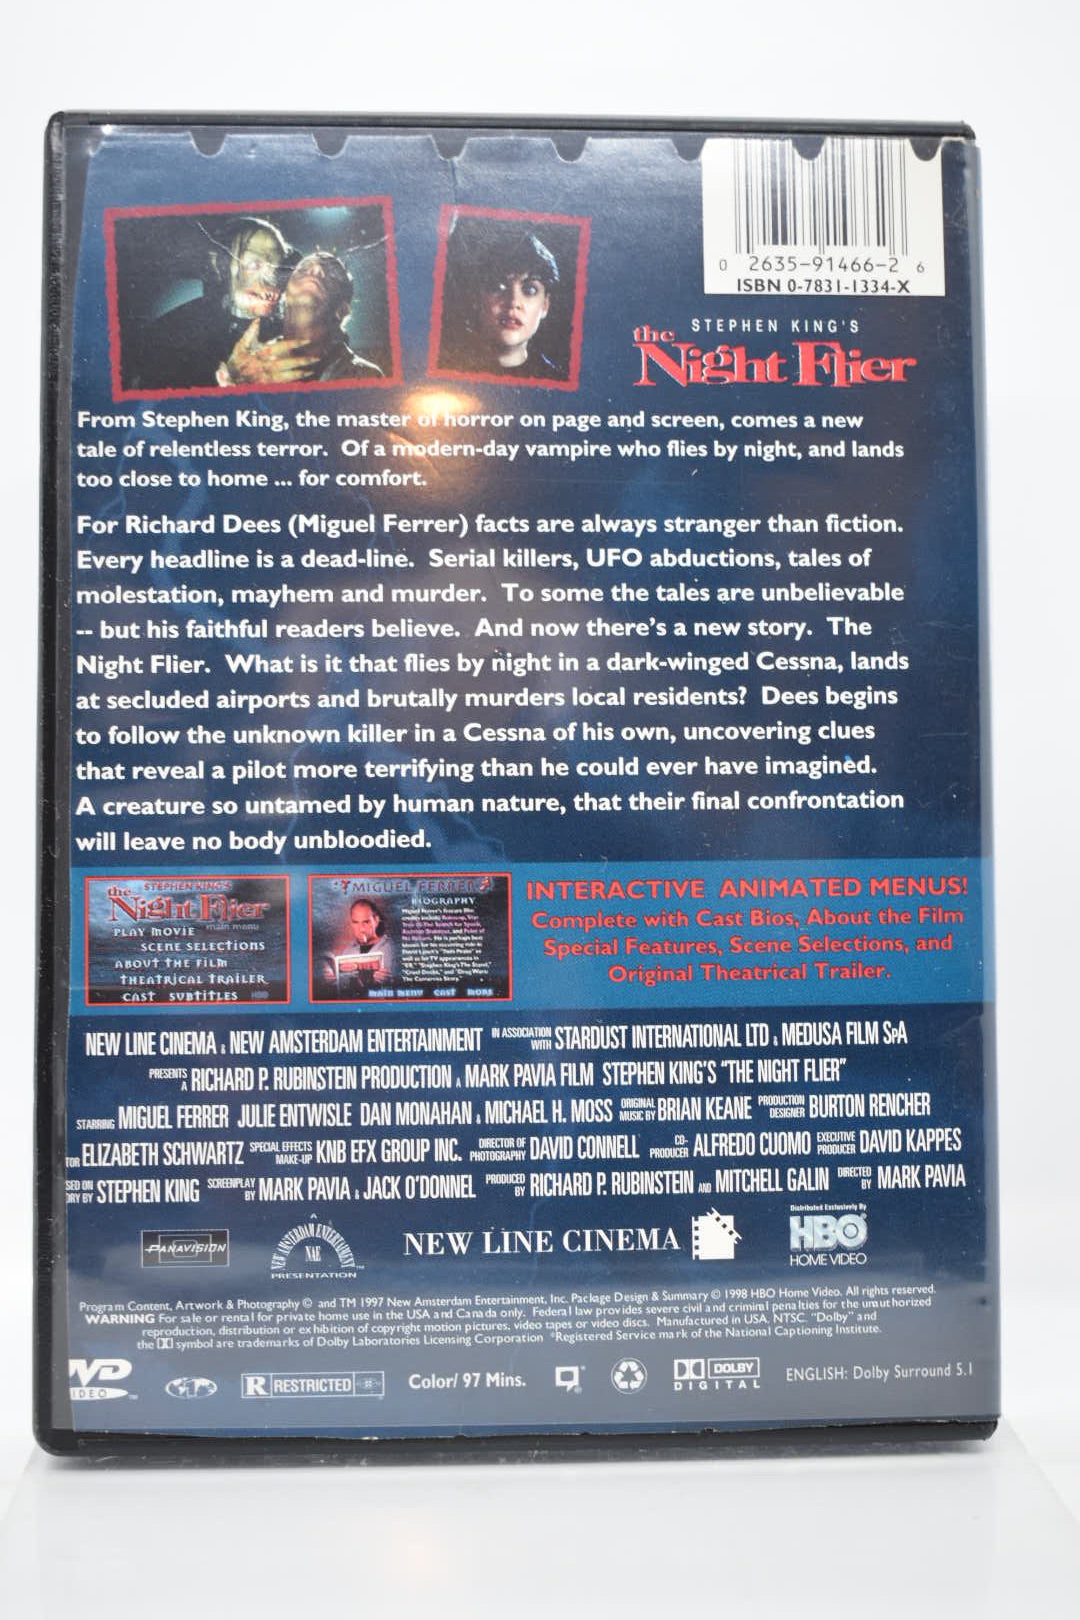 DVD - Coleção Stephen King - Eclipse total - Vol 3